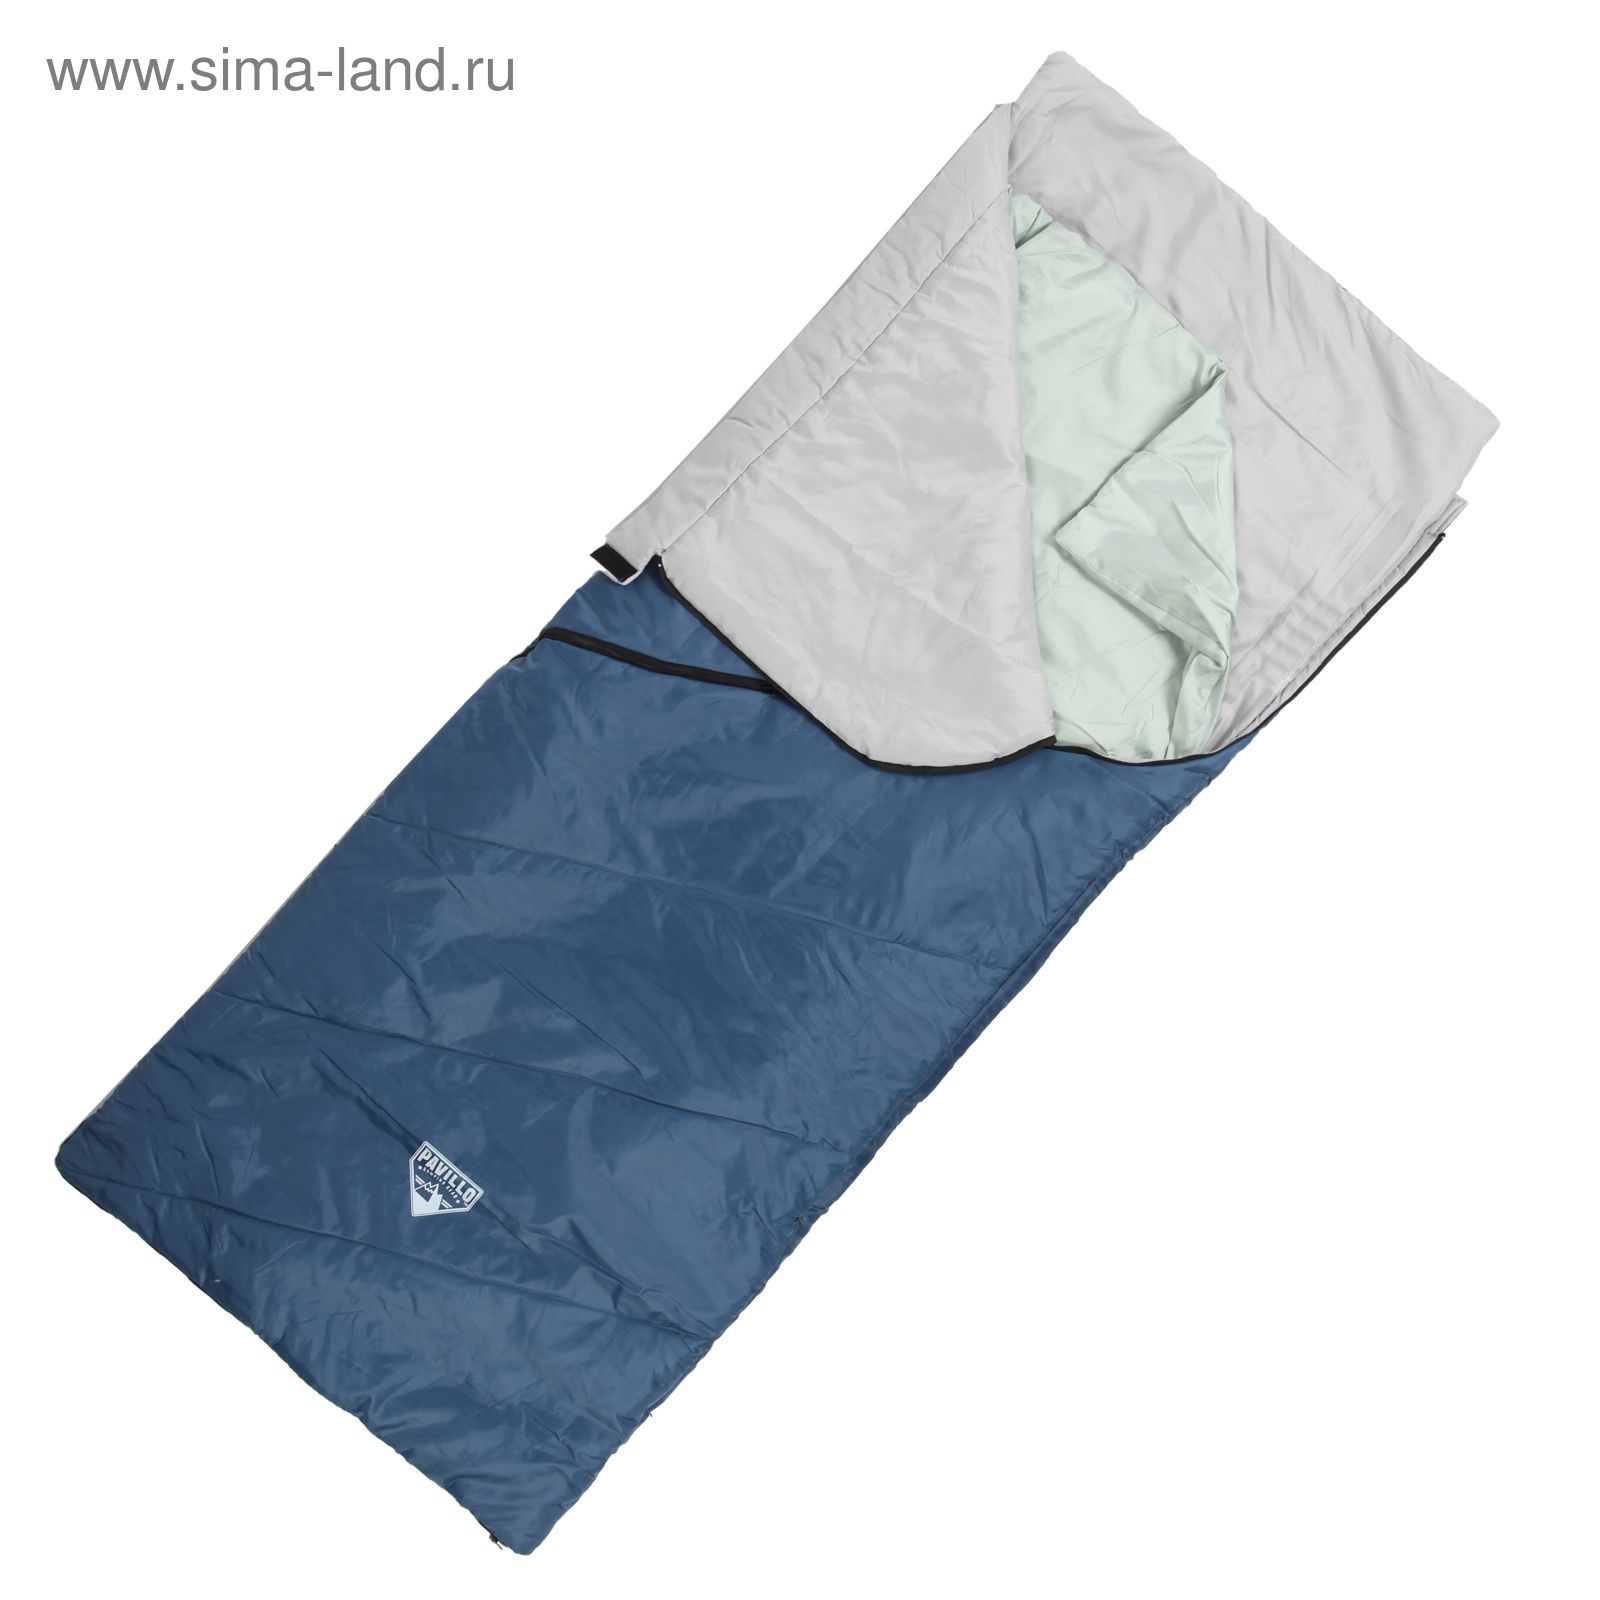 Спальный мешок Matric, 195х80 см, от 9°C до 13°C